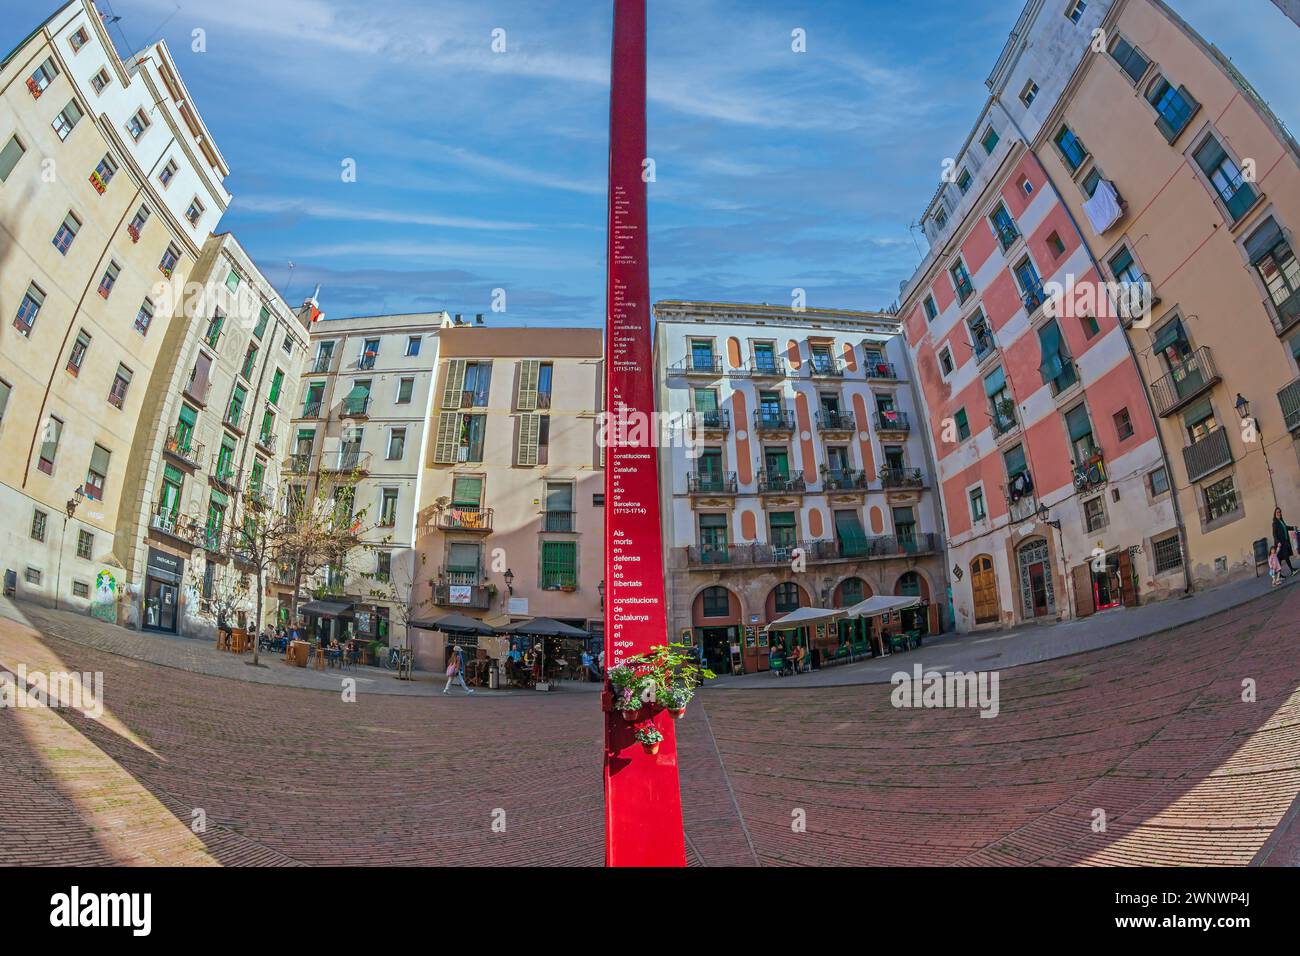 BARCELONA, SPANIEN - FEB. 27, 2022: Plaza Fossar de les Moreres, ein Gedenkplatz mit einem Denkmal, einer Flamme und dem Gedicht von Frederic Soler, in Stockfoto